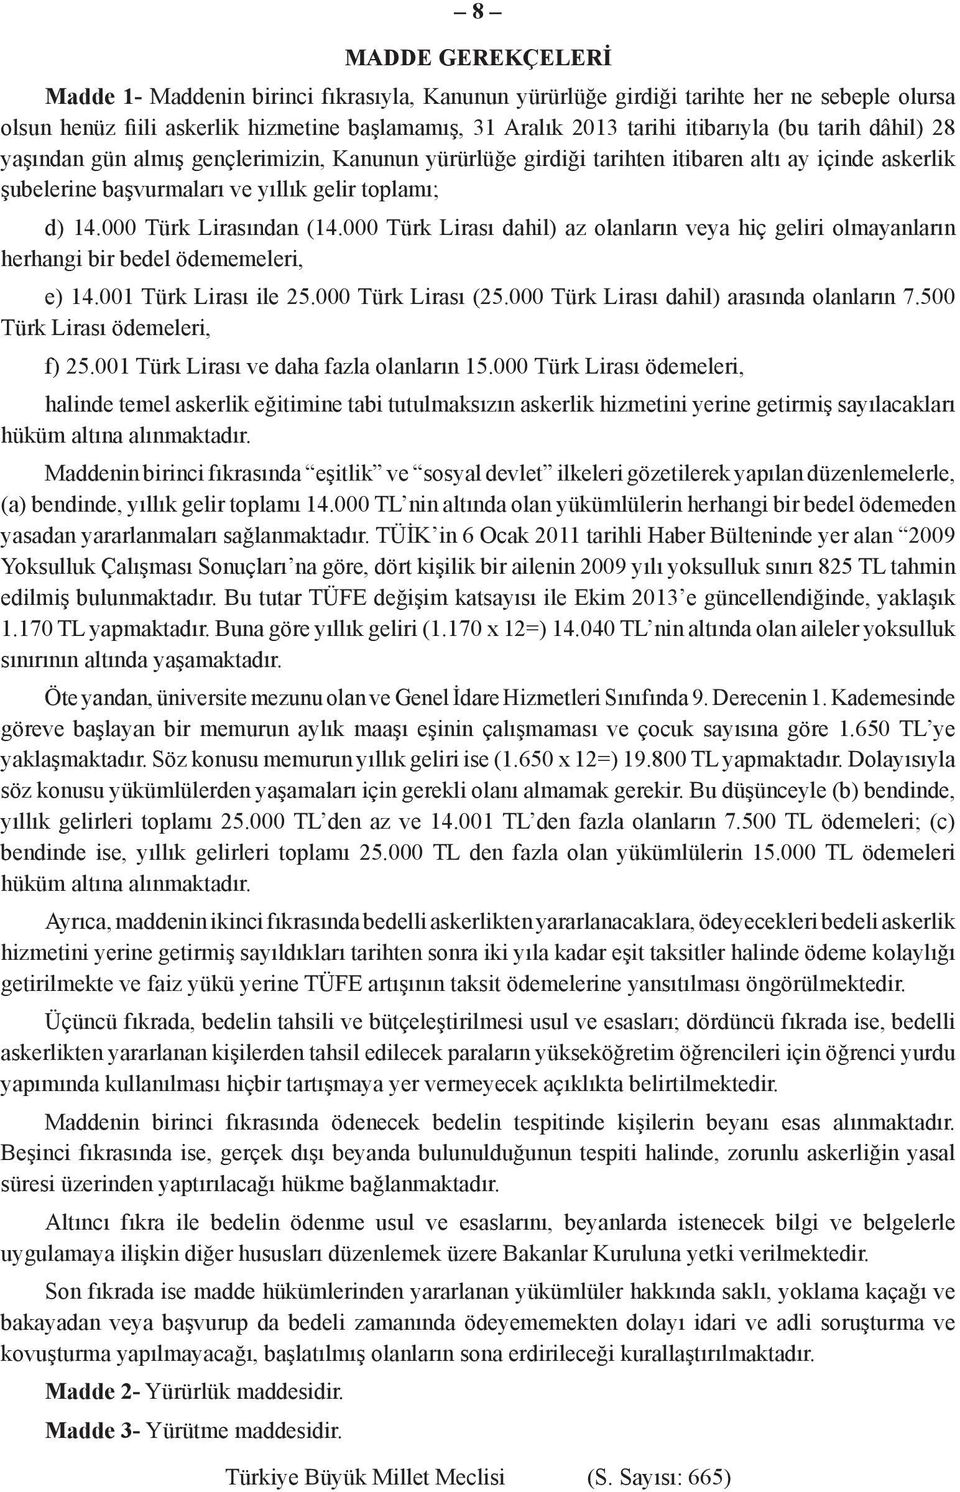 000 Türk Lirası dahil) az olanların veya hiç geliri olmayanların herhangi bir bedel ödememeleri, e) 14.001 Türk Lirası ile 25.000 Türk Lirası (25.000 Türk Lirası dahil) arasında olanların 7.